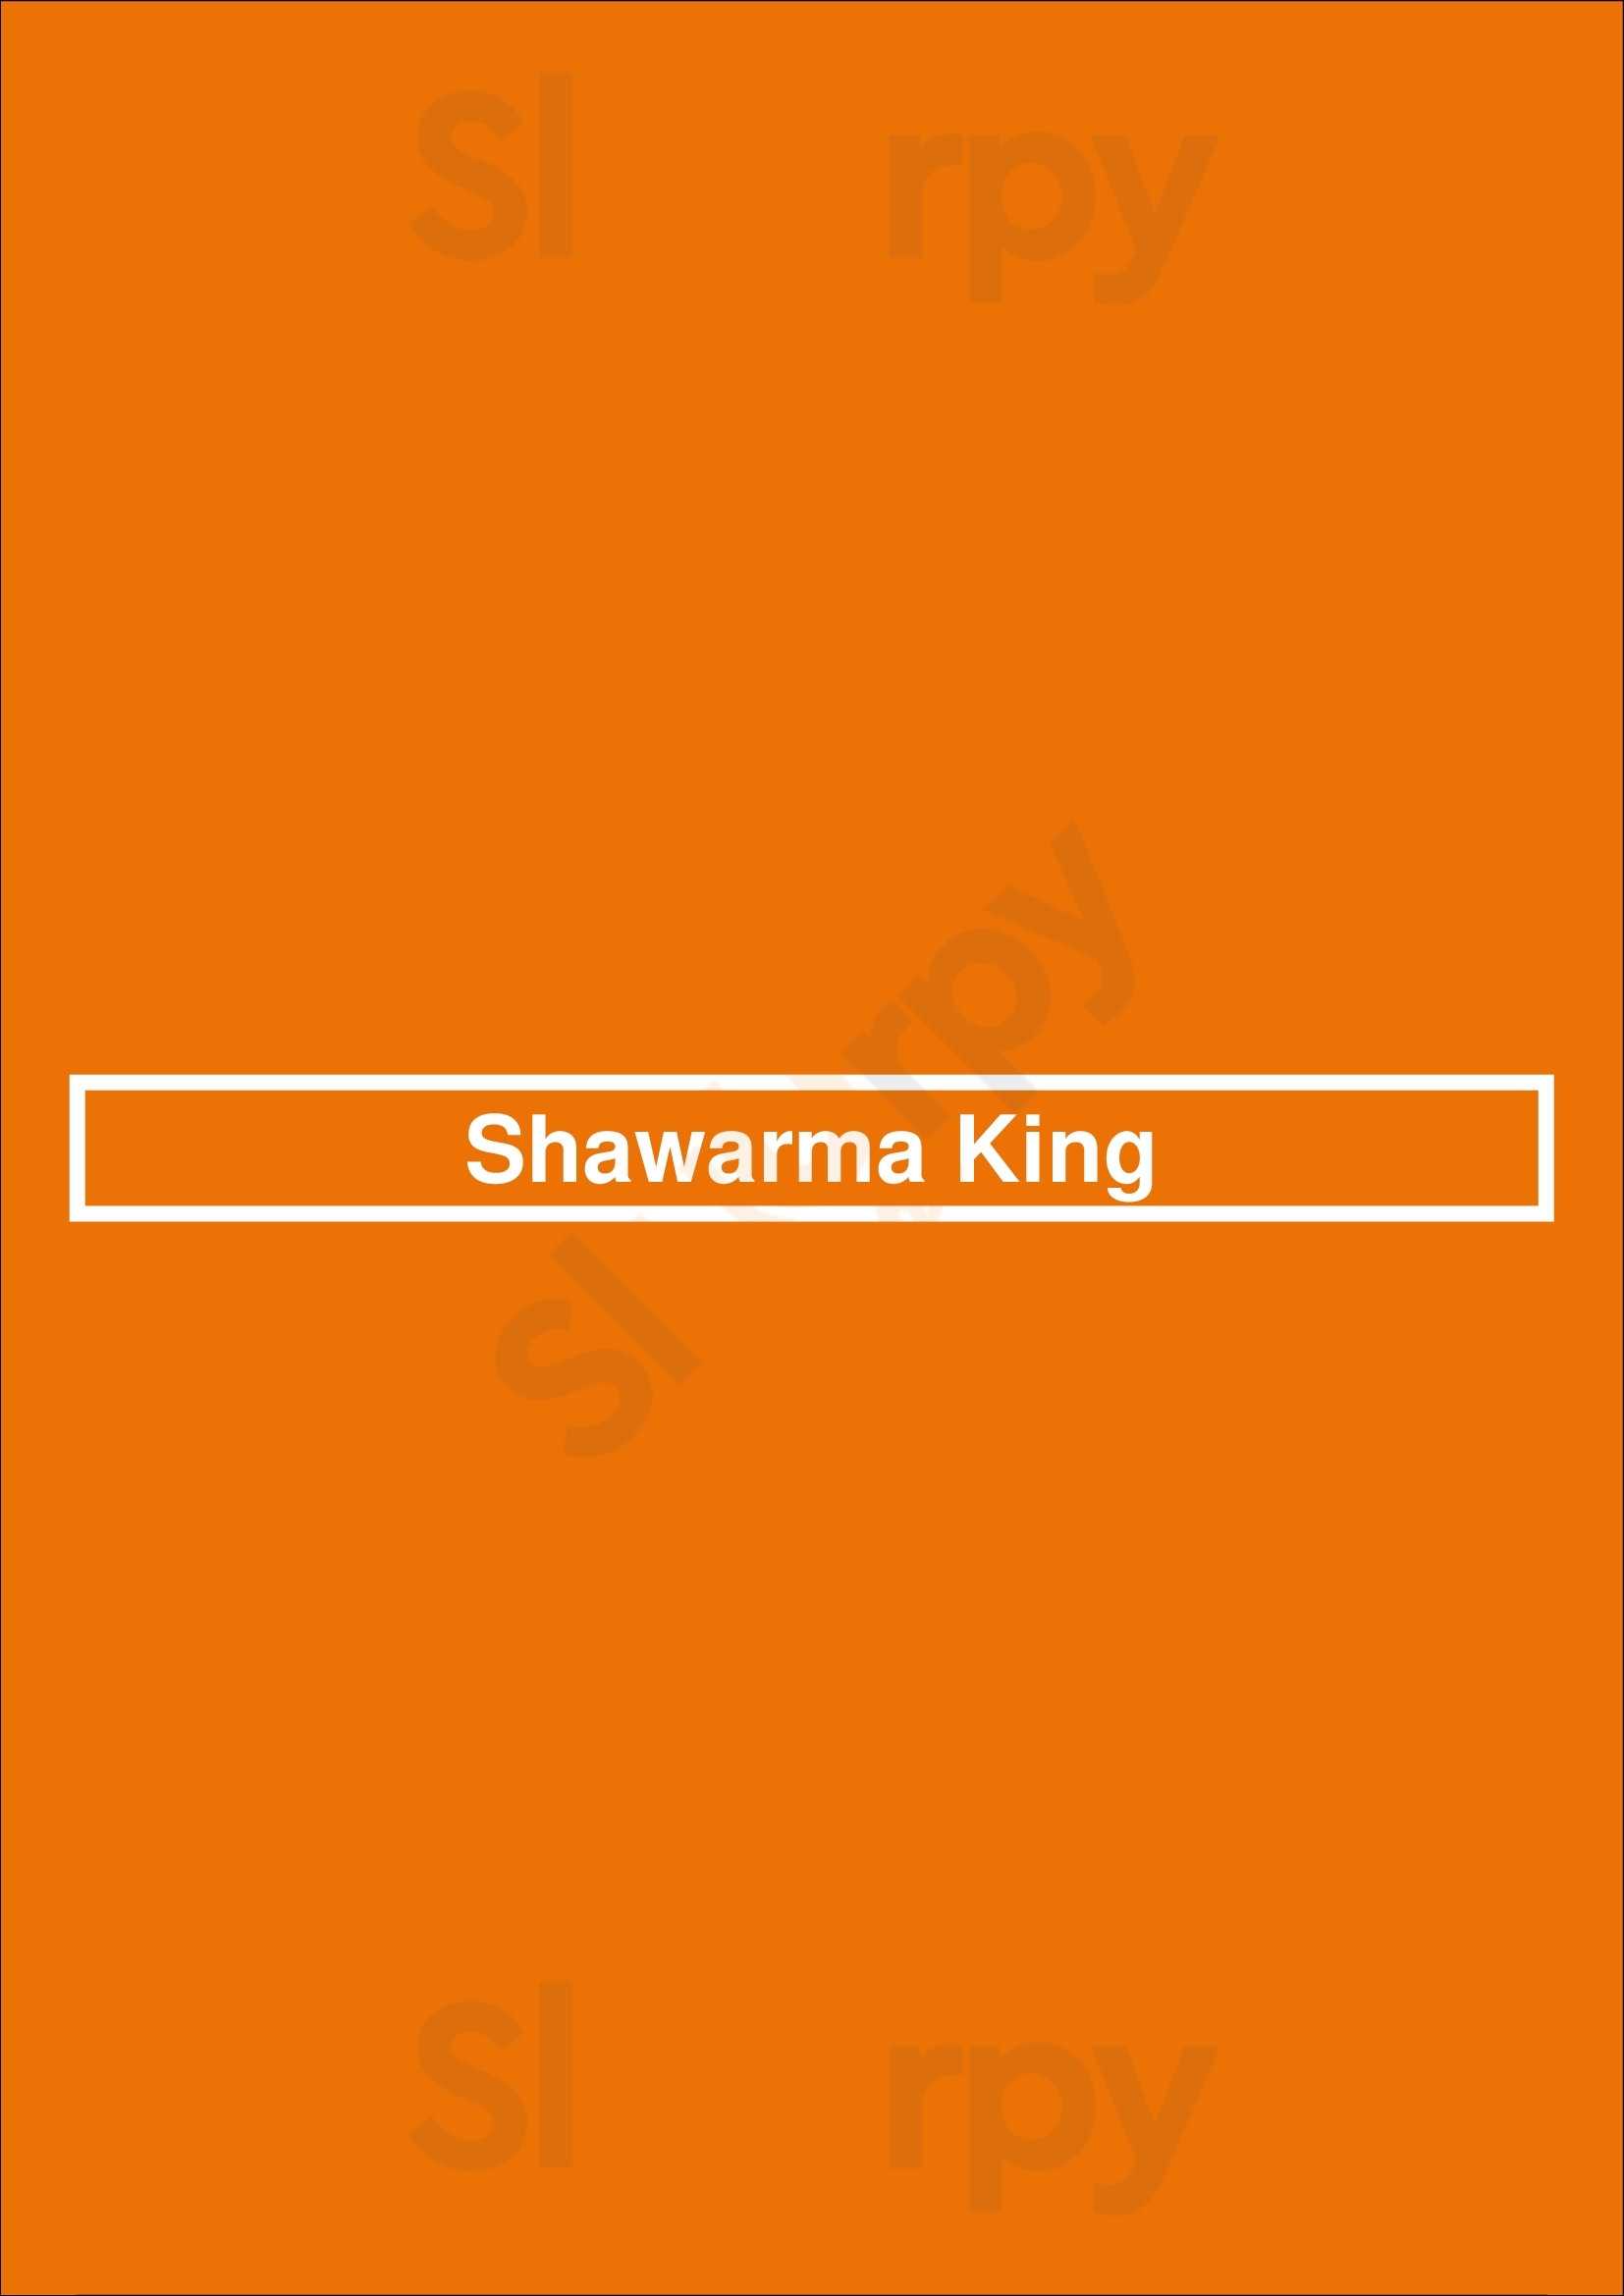 Shawarma King Calgary Menu - 1